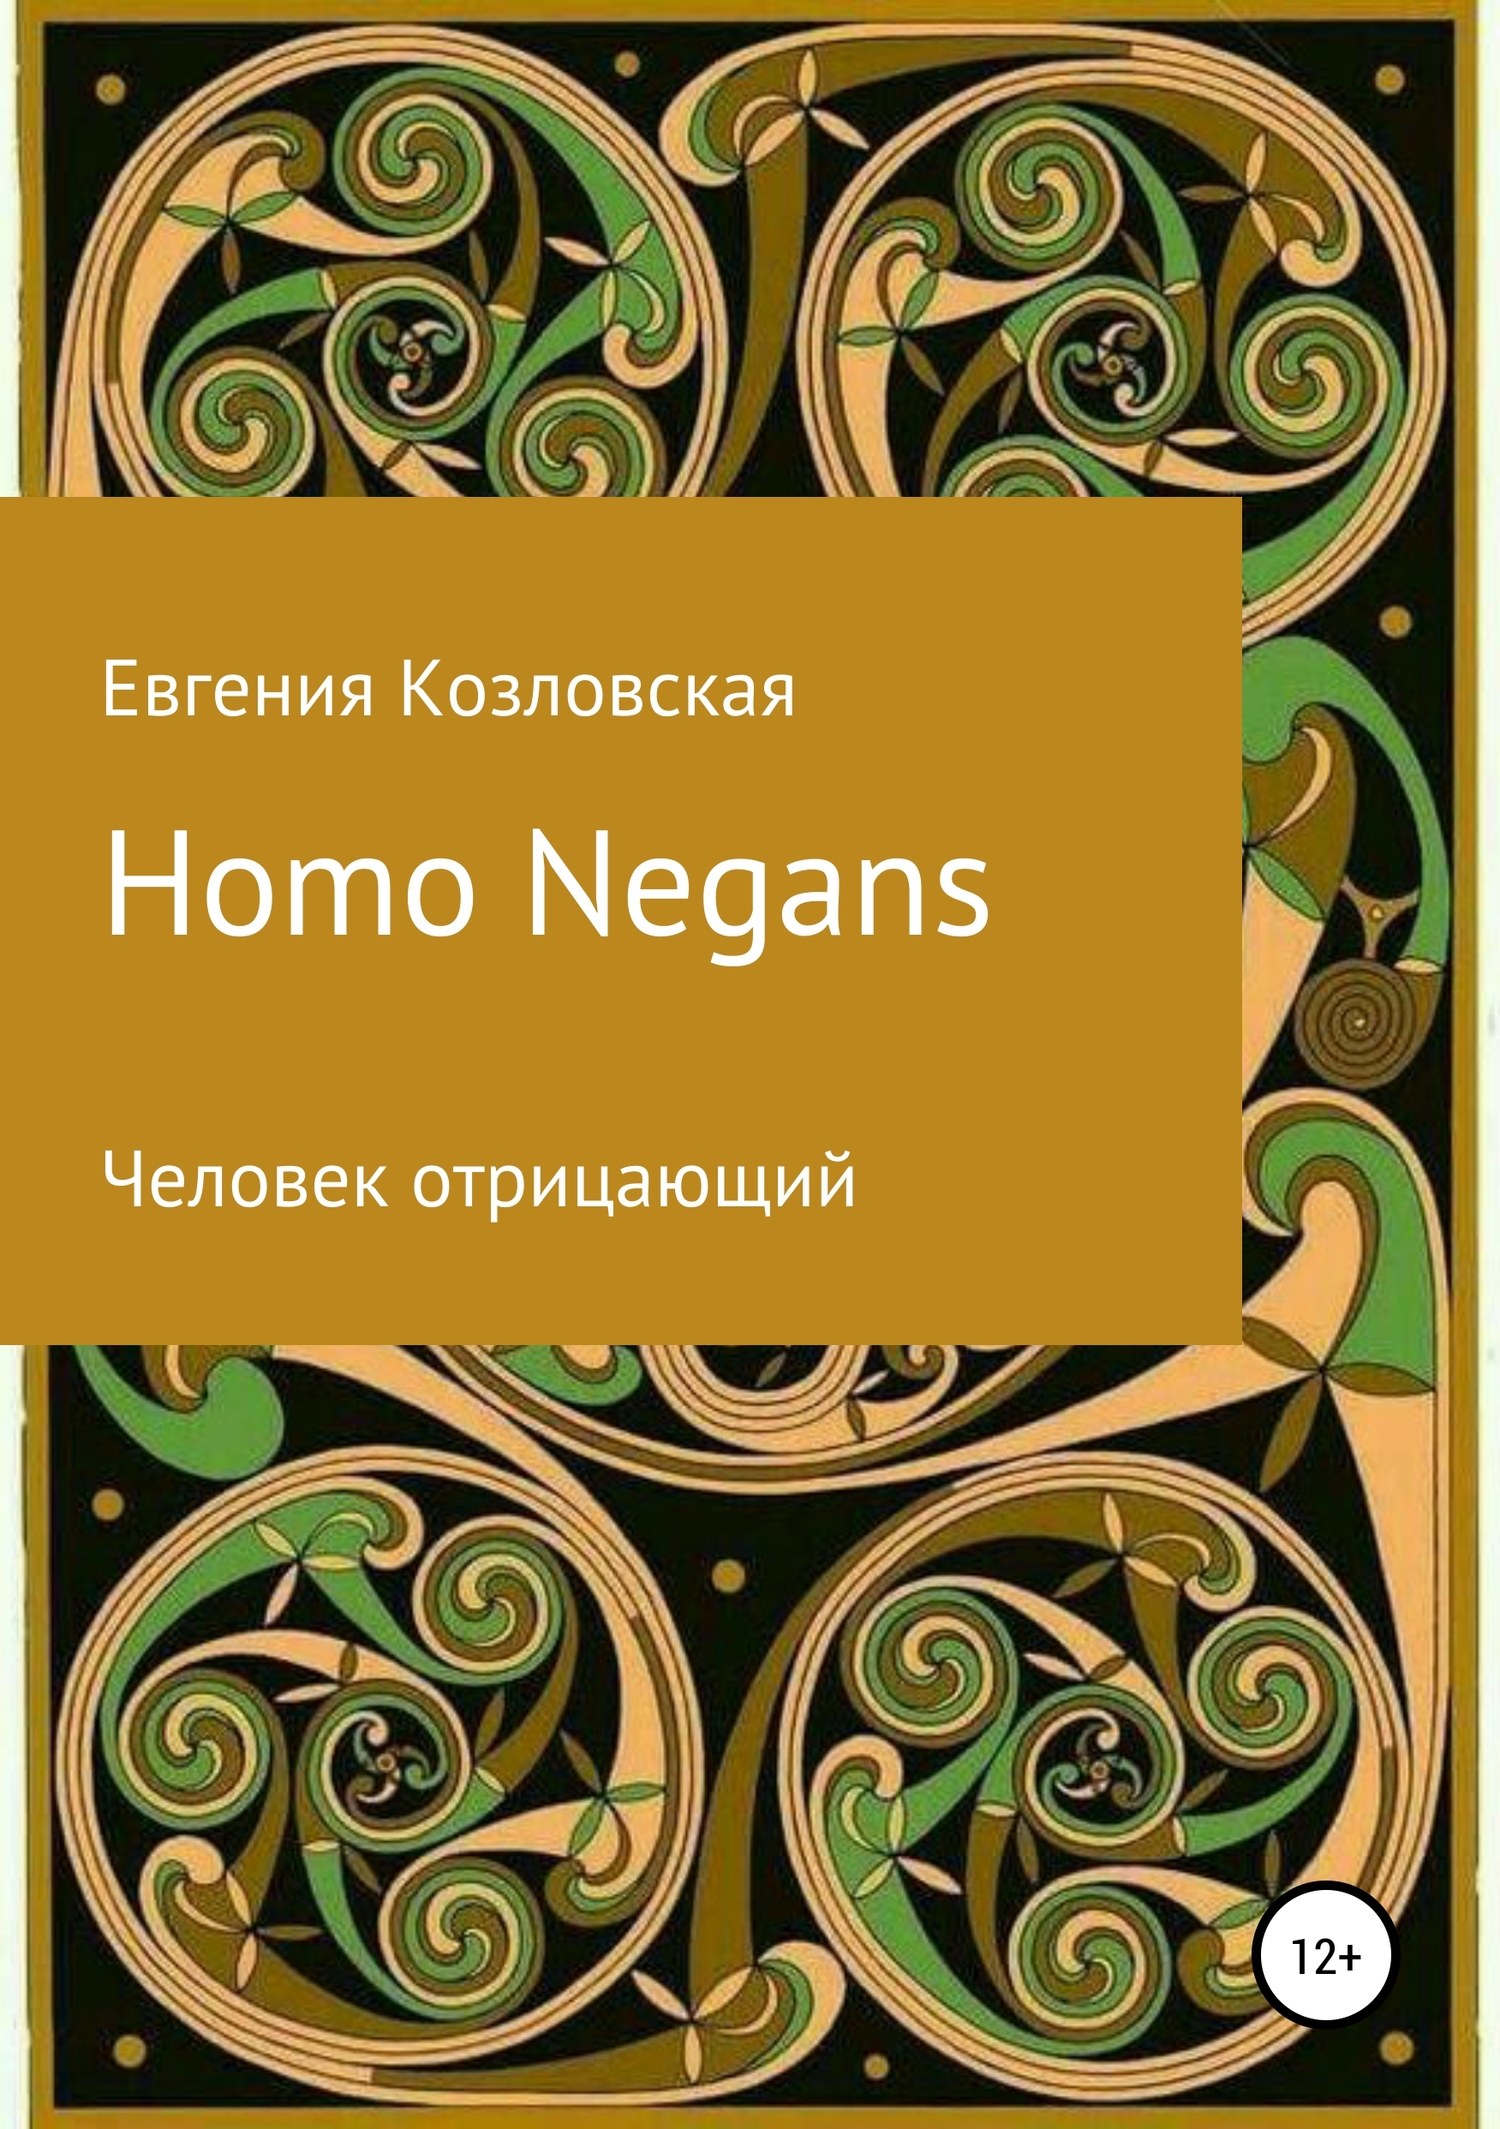 Козловская Евгения - Homo Negans: Человек отрицающий скачать бесплатно